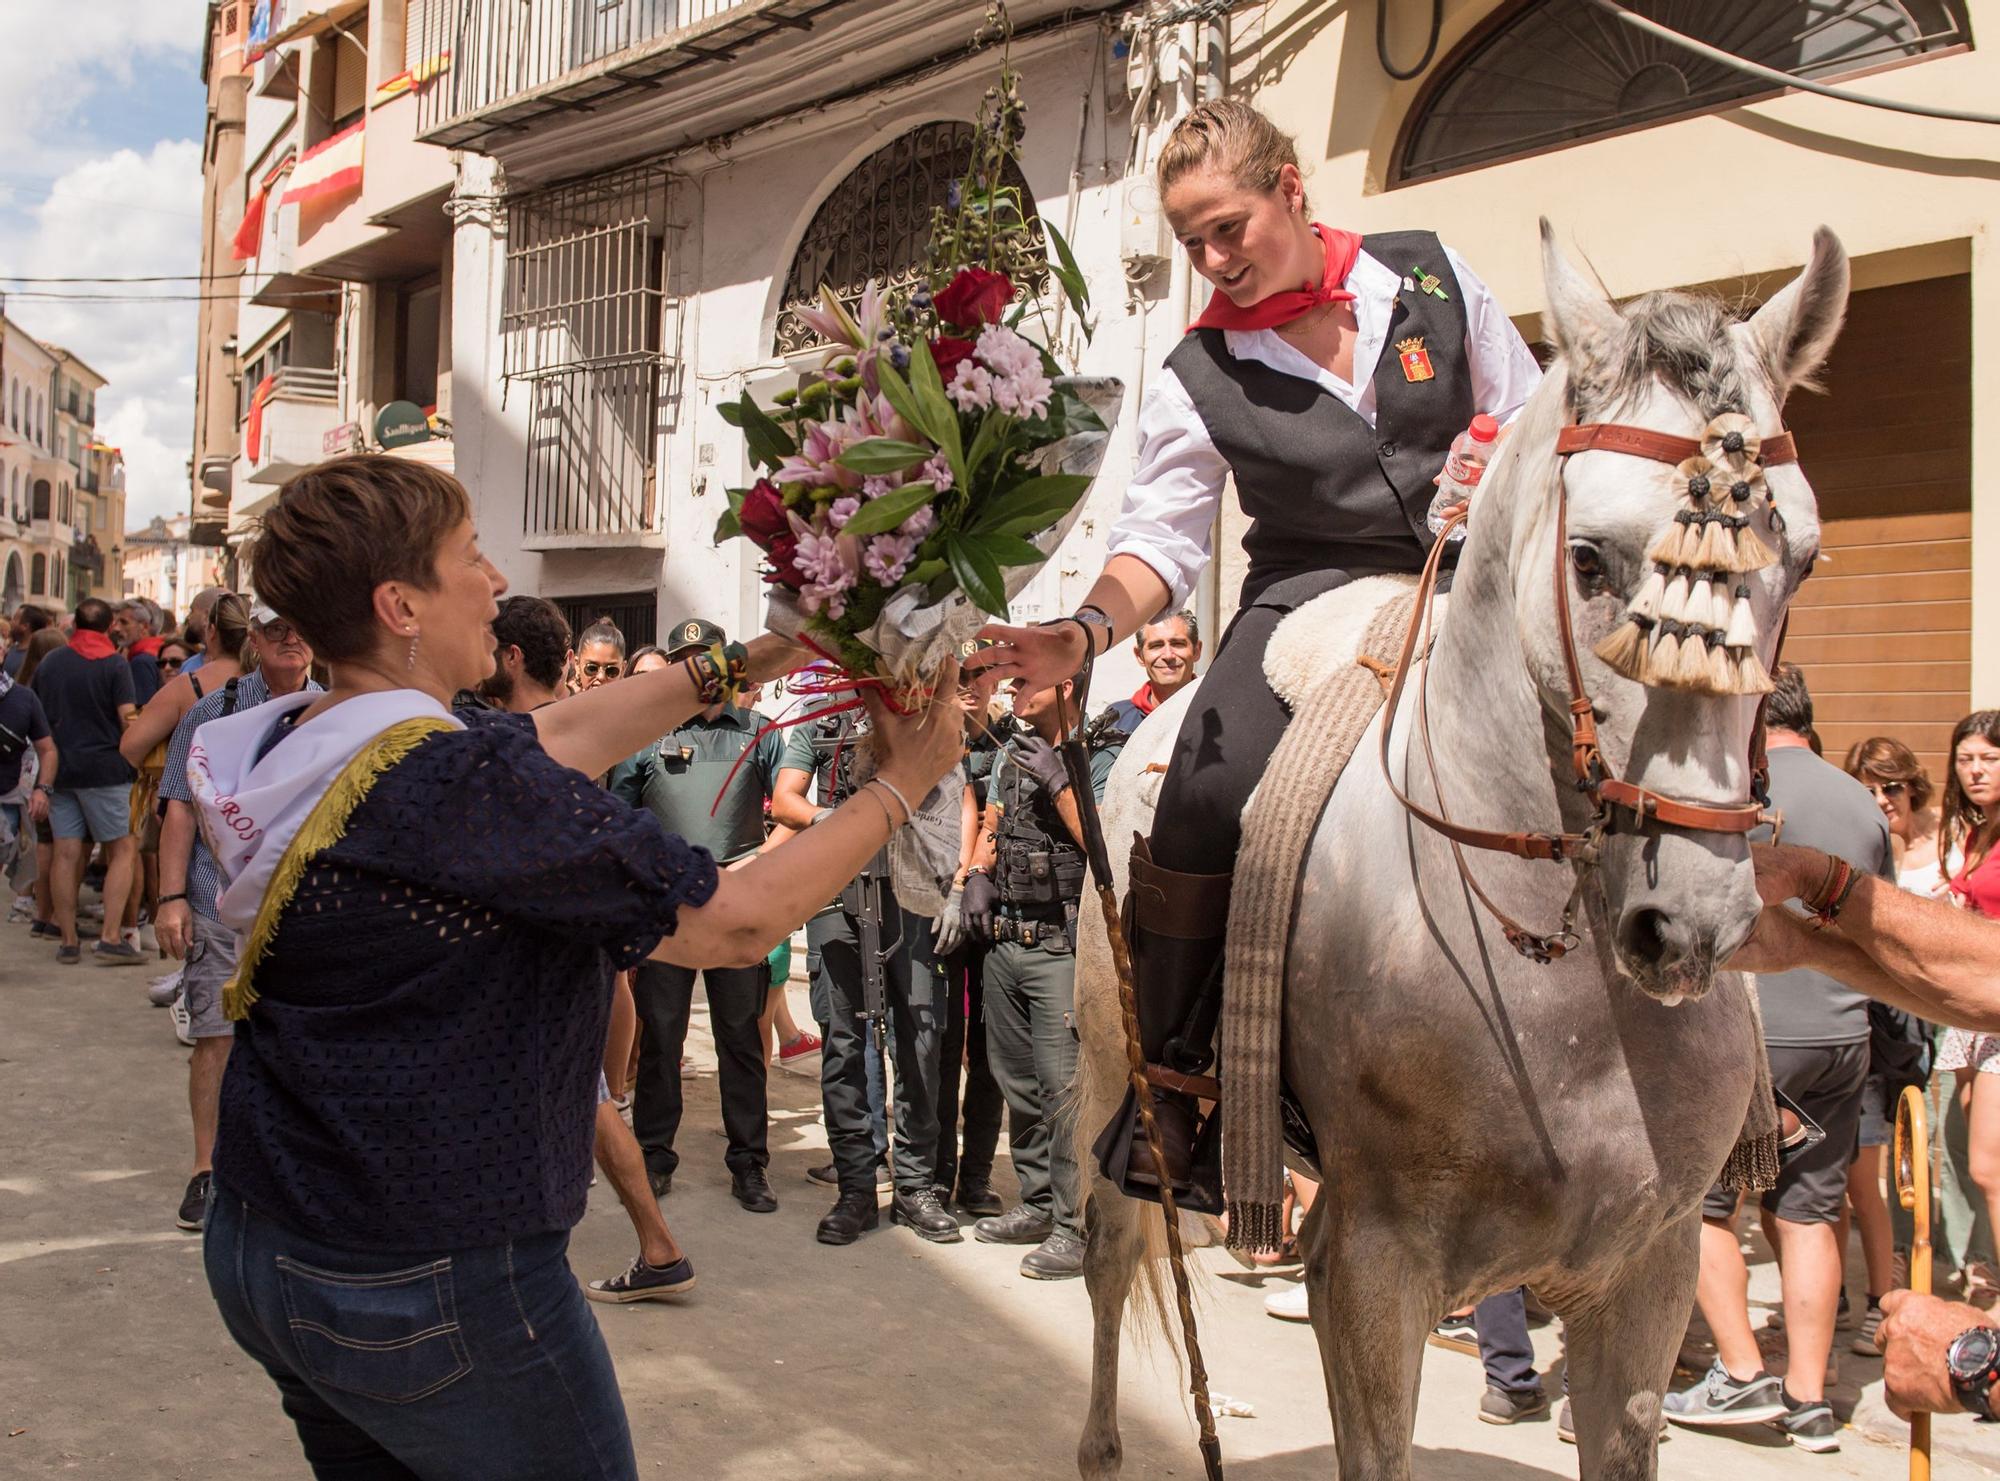 La alcaldesa, Mª Carmen Climent, entrega un ramo de flores a la amazona María Zarzoso por su debut este año.